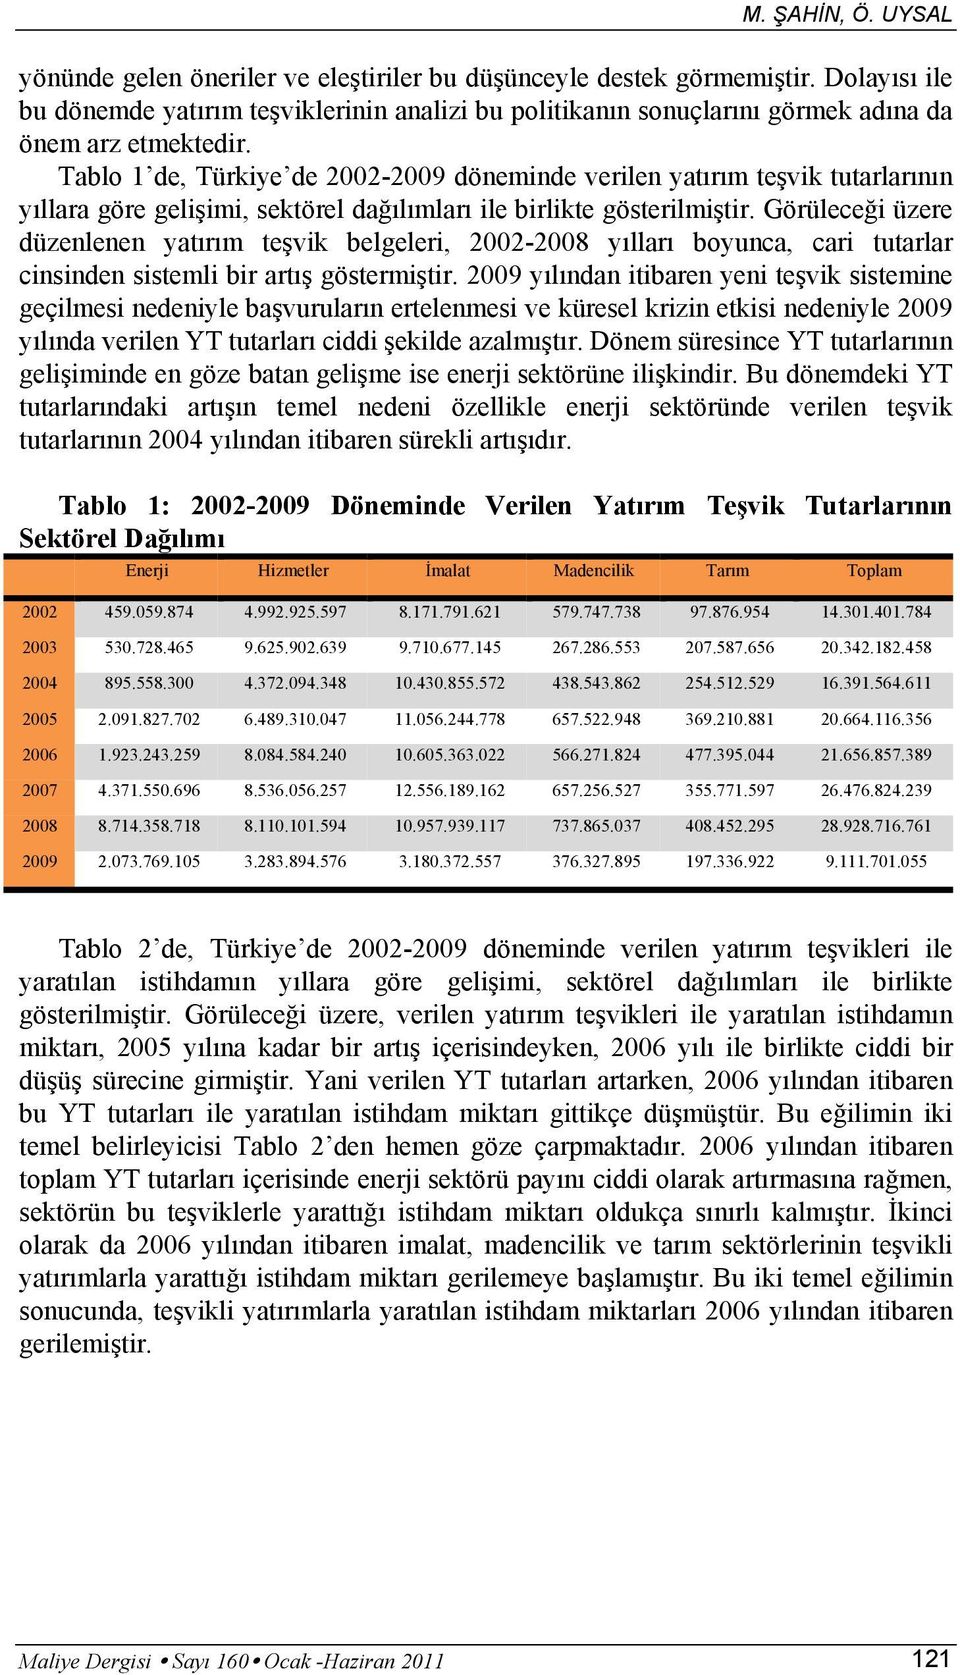 Tablo 1 de, Türkiye de 22-29 döneminde verilen yatırım teşvik tutarlarının yıllara göre gelişimi, sektörel dağılımları ile birlikte gösterilmiştir.